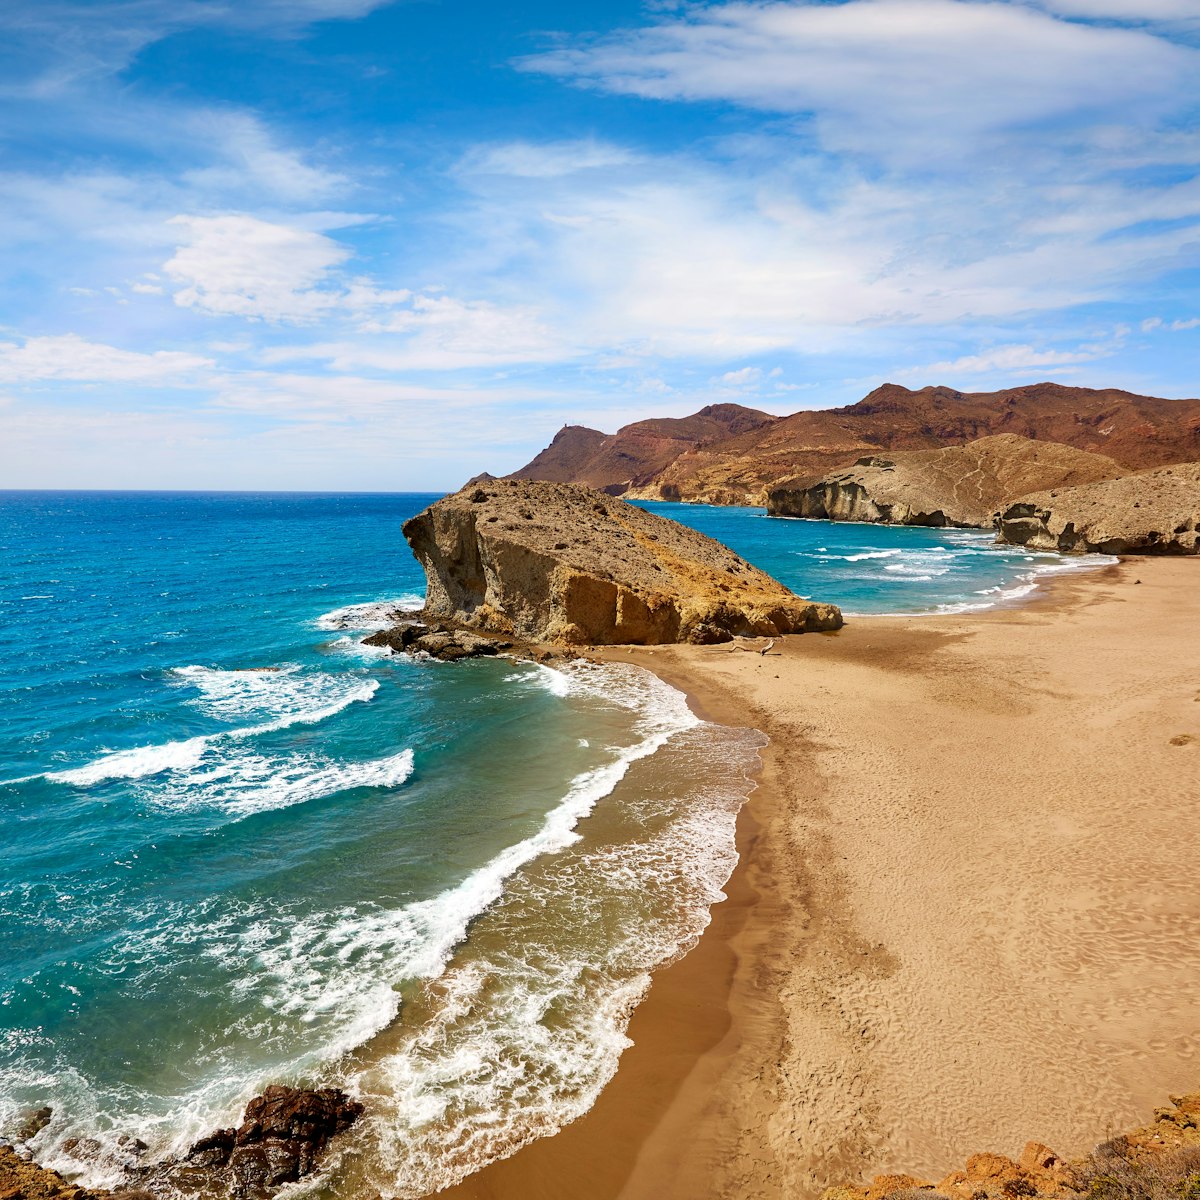 Playa de Monsul beach at Cabo de Gata.